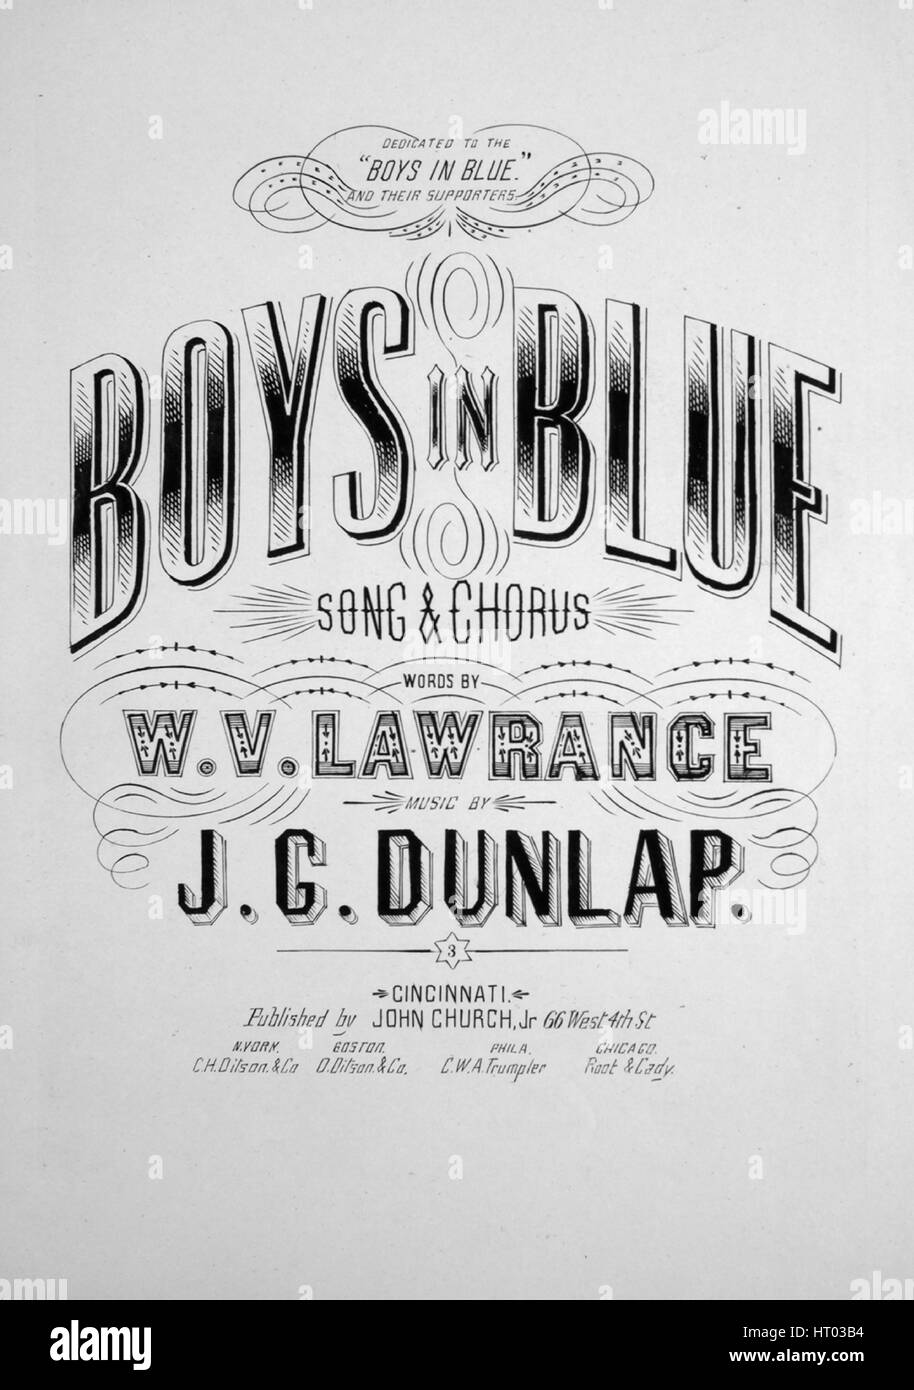 Imagen de cubierta de partituras de la canción "Los chicos de azul y el coro  de la canción", con notas de autoría original leyendo 'palabras por WV  Lawrance música por JG Dunlap',